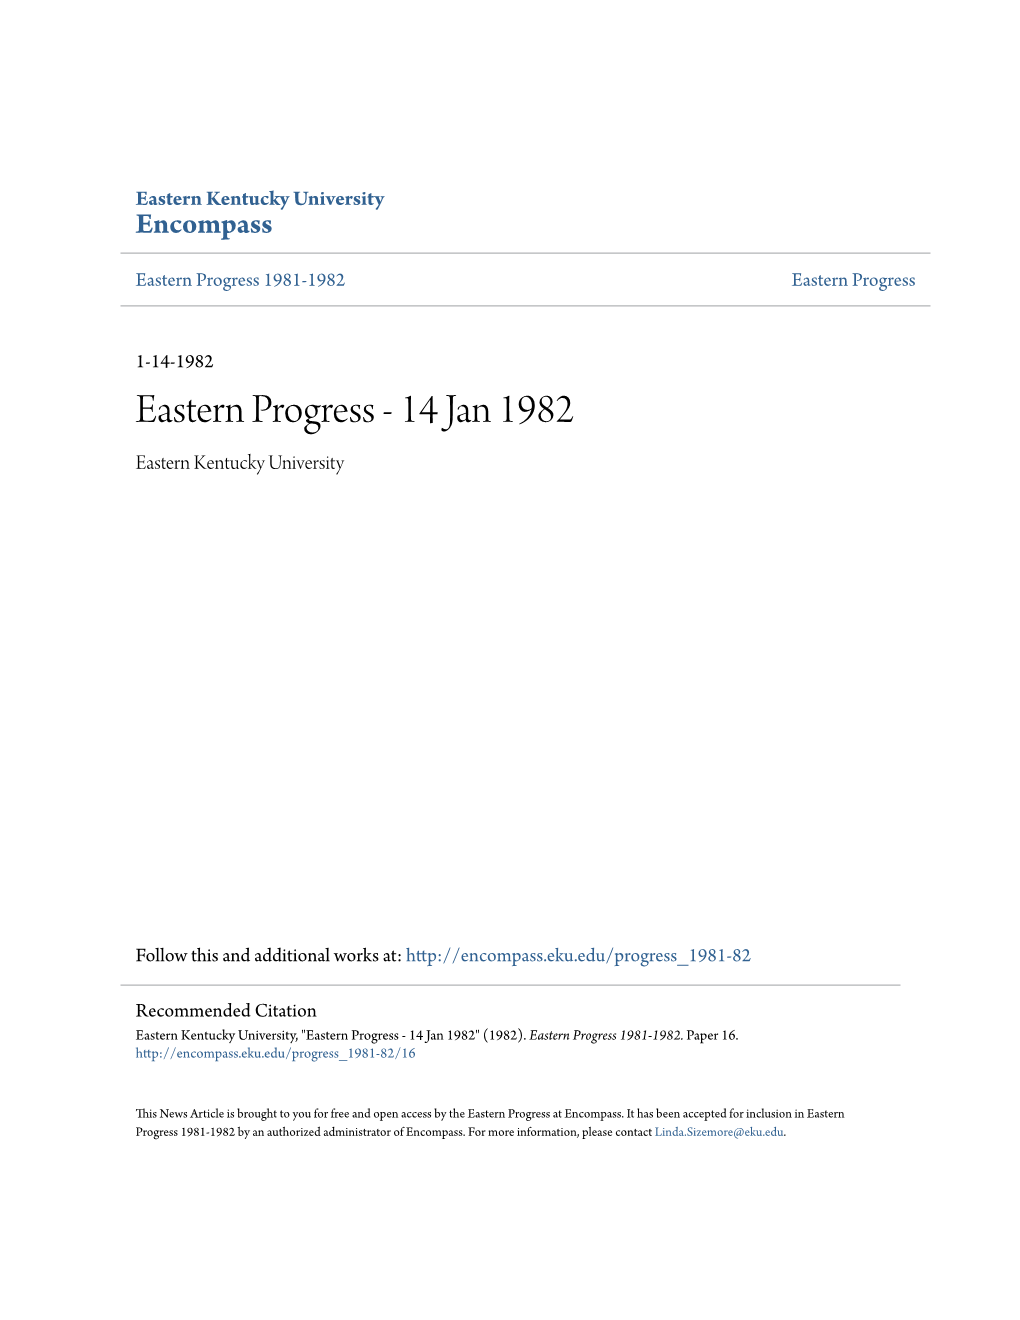 Eastern Progress 1981-1982 Eastern Progress